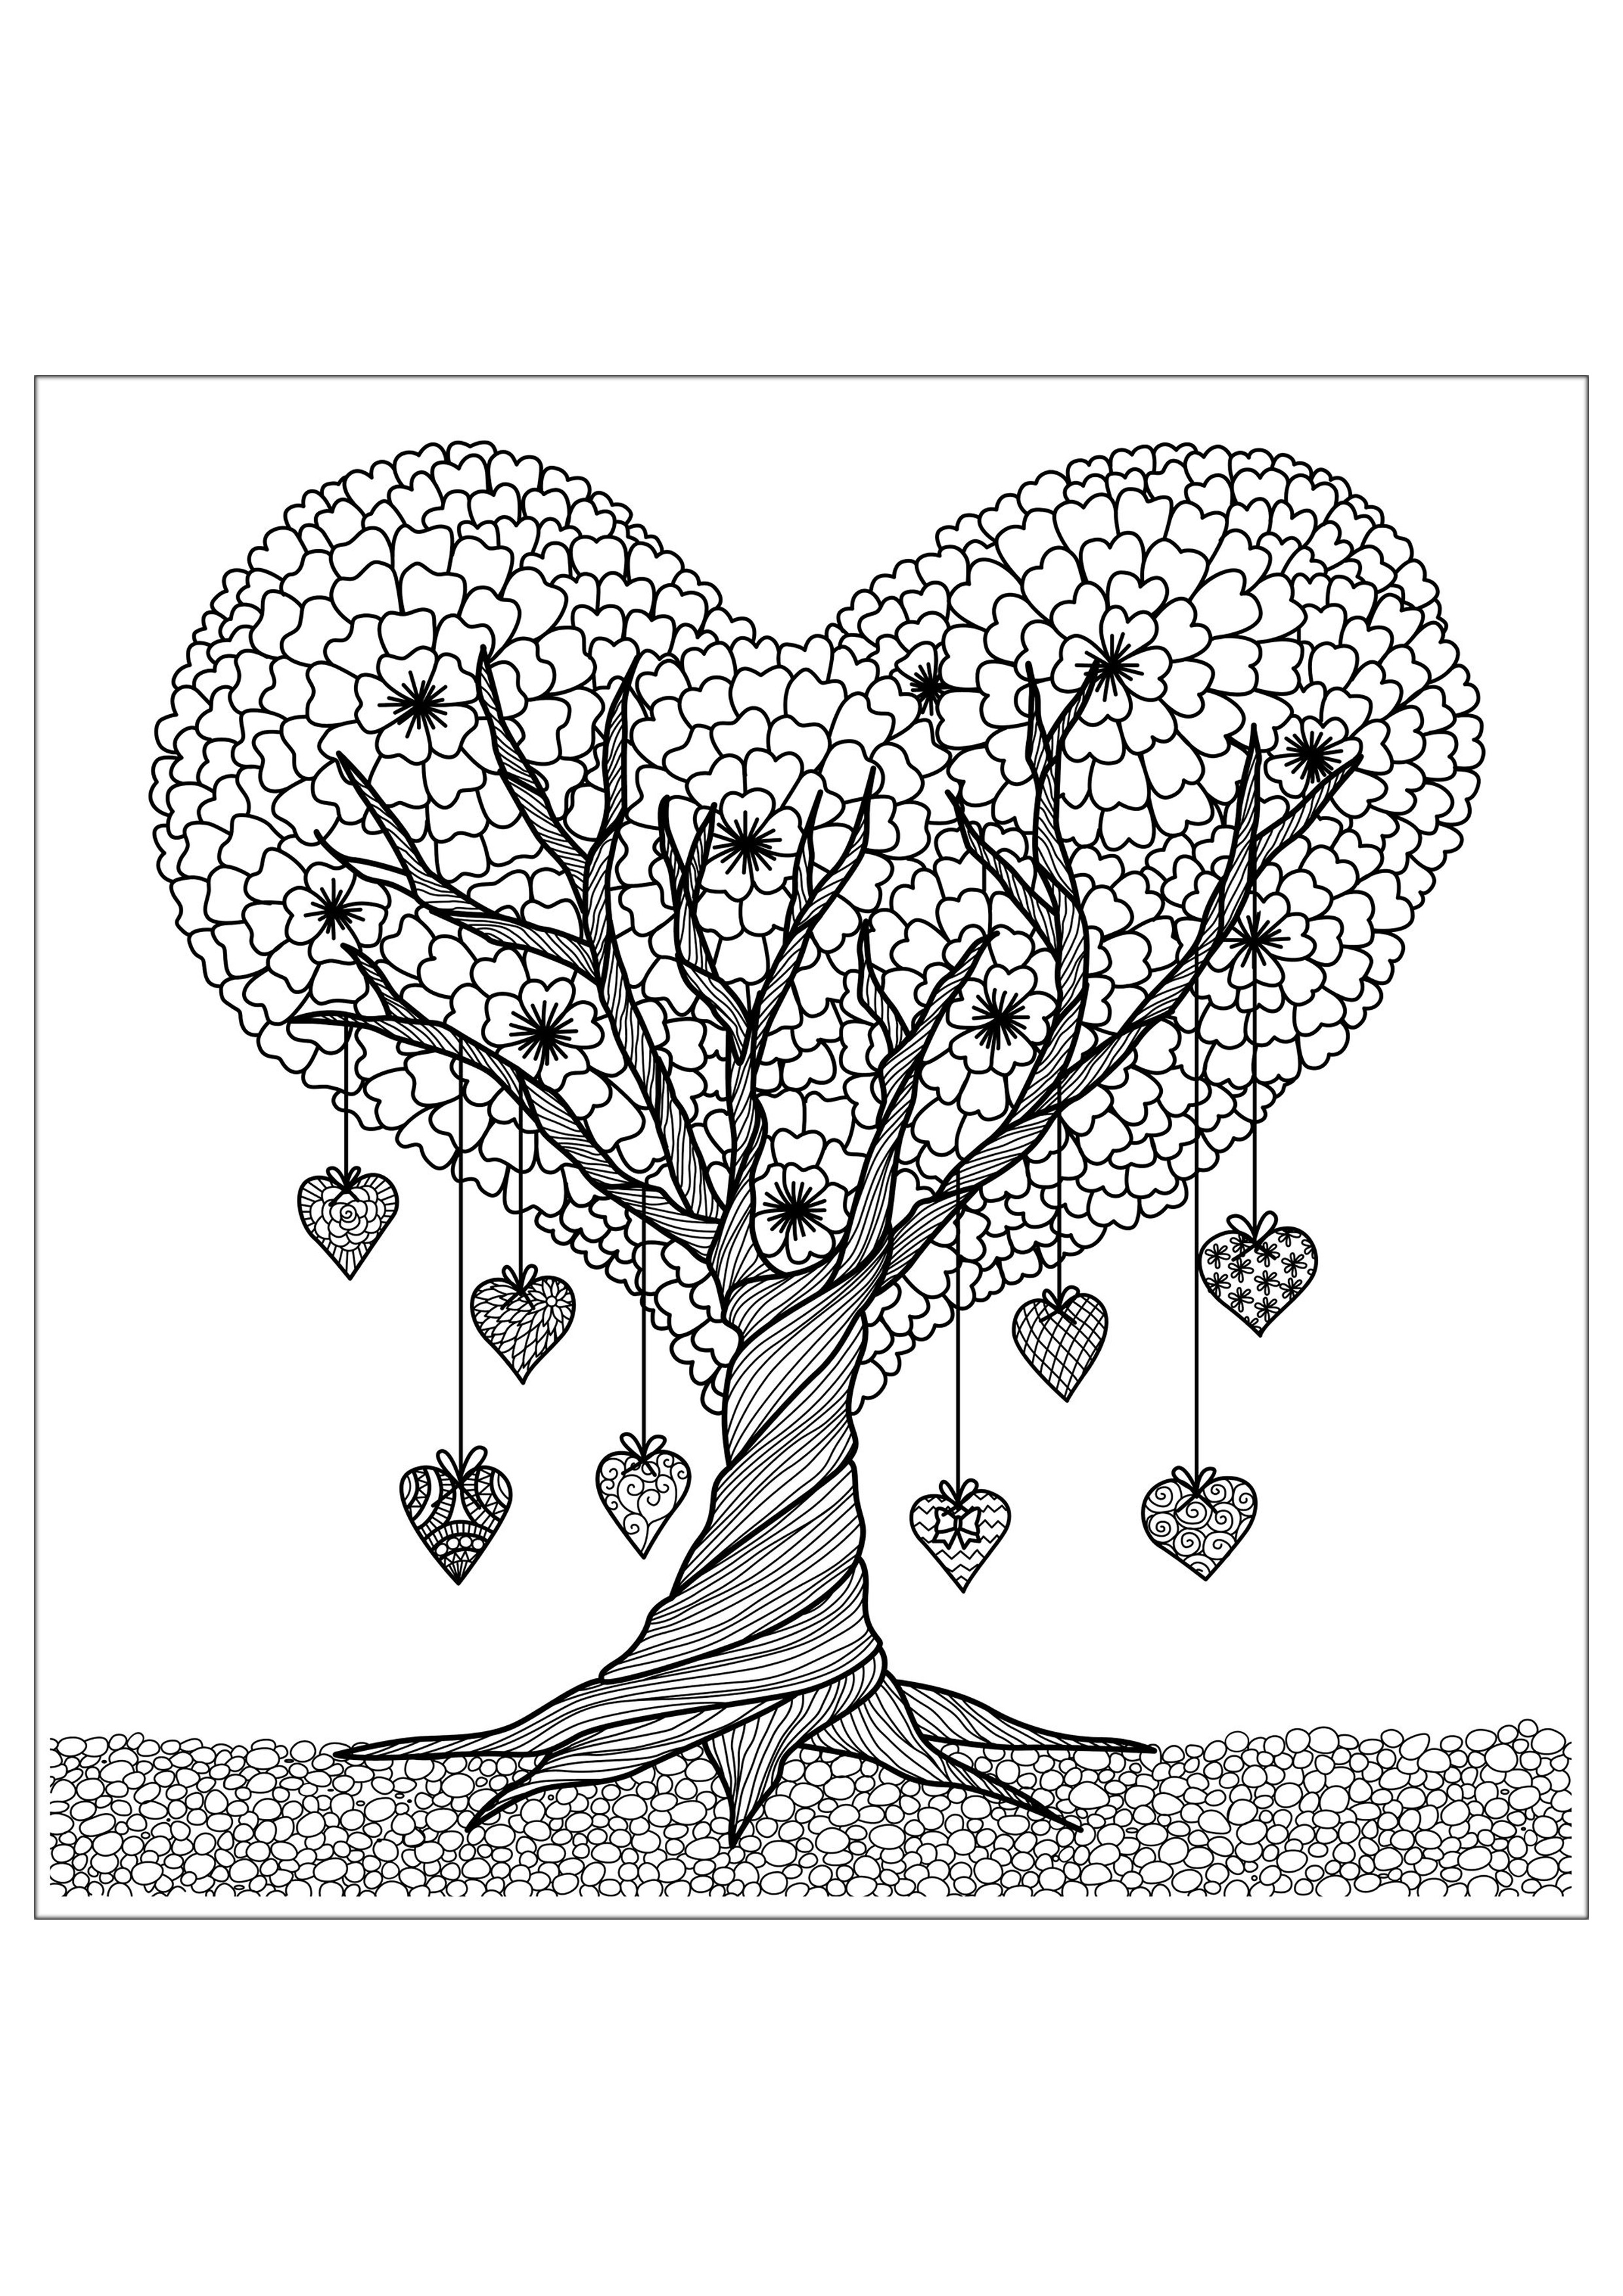 Le Coeurisier : l'arbre où poussent les coeurs, Artiste : Bimdeedee